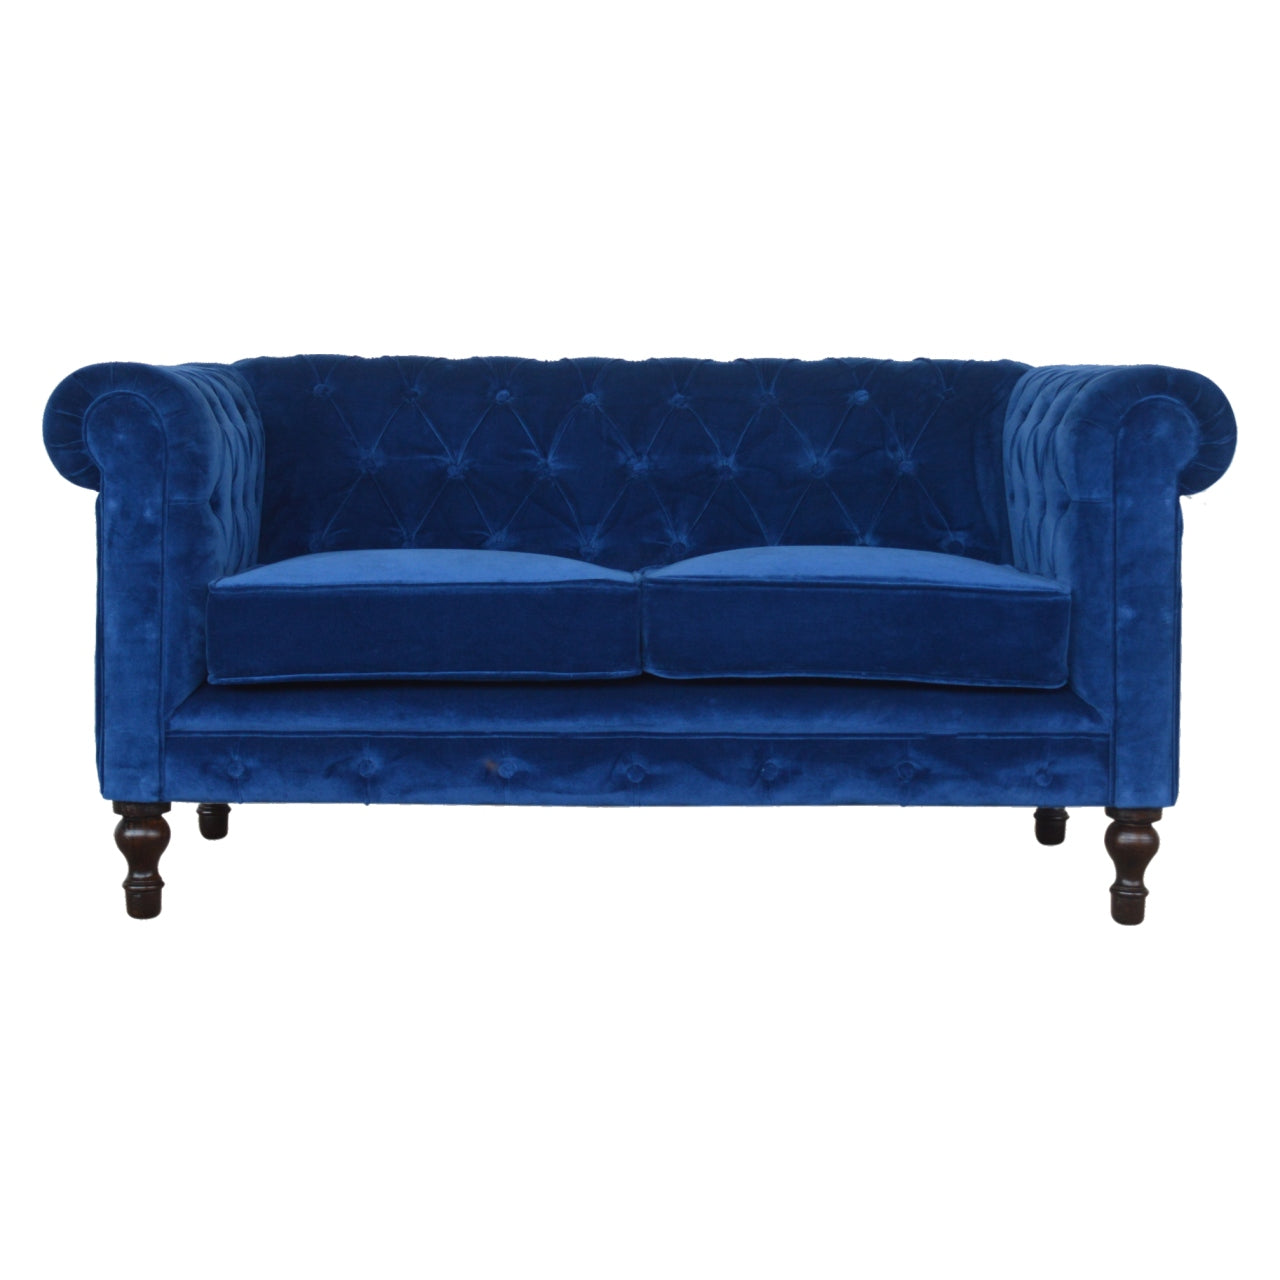 View Royal Blue Velvet Chesterfield Sofa information